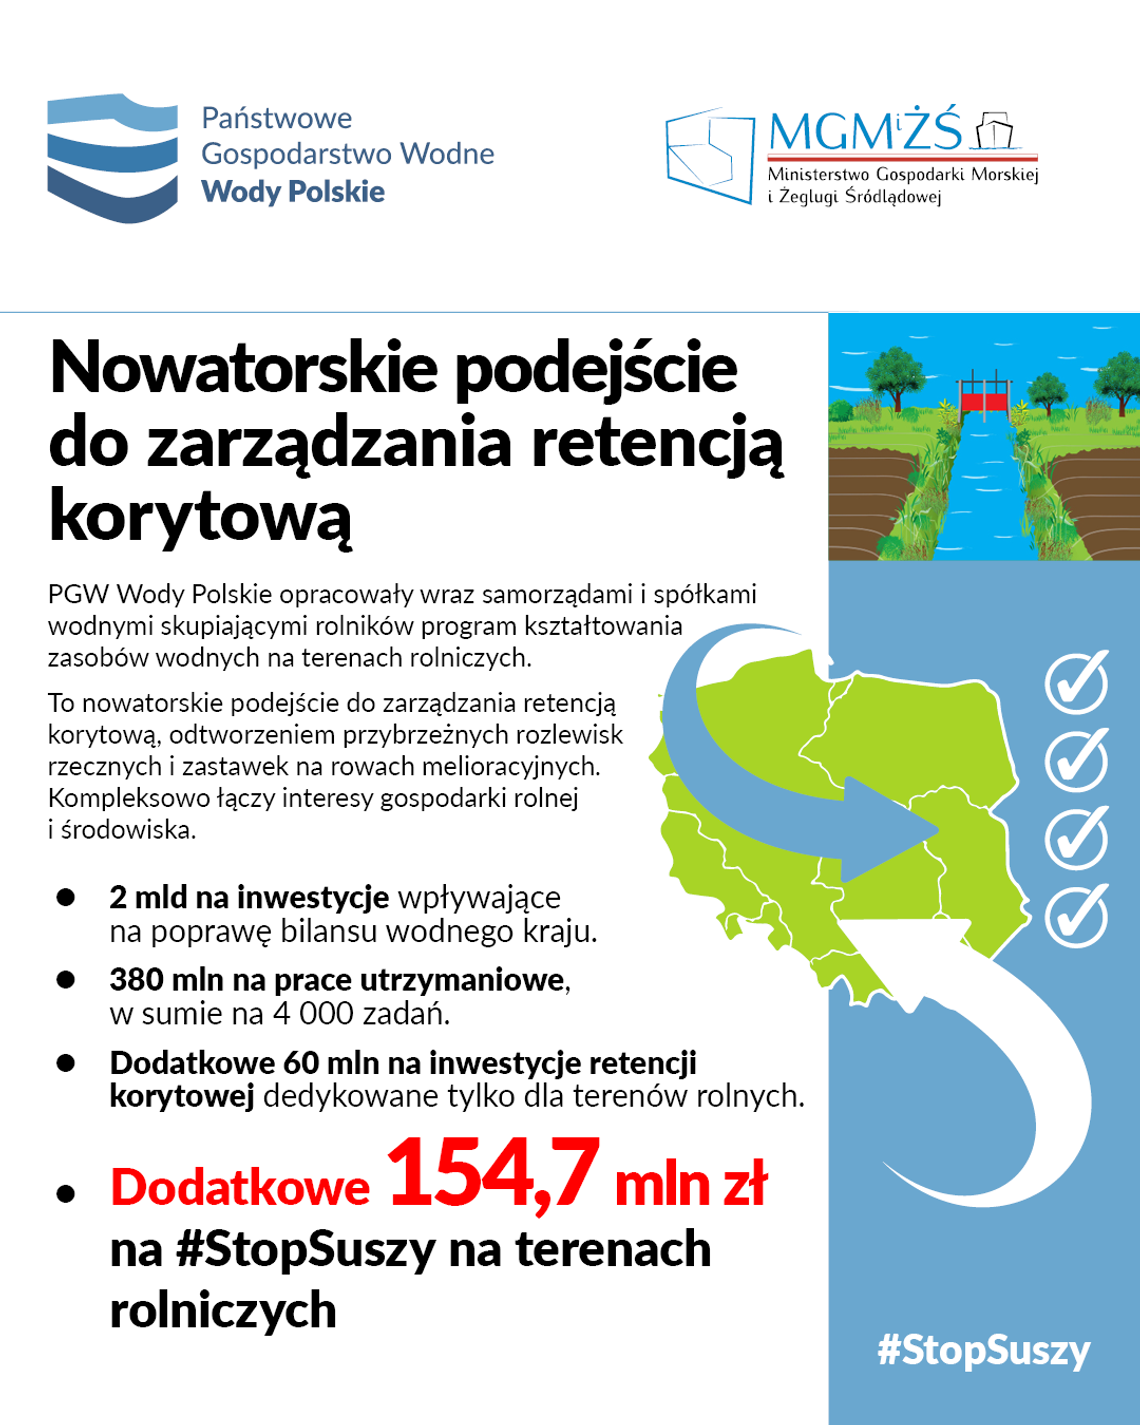 W gminie Dobrzyń nad Wisłą powstaną 3 zbiorniki retencyjne